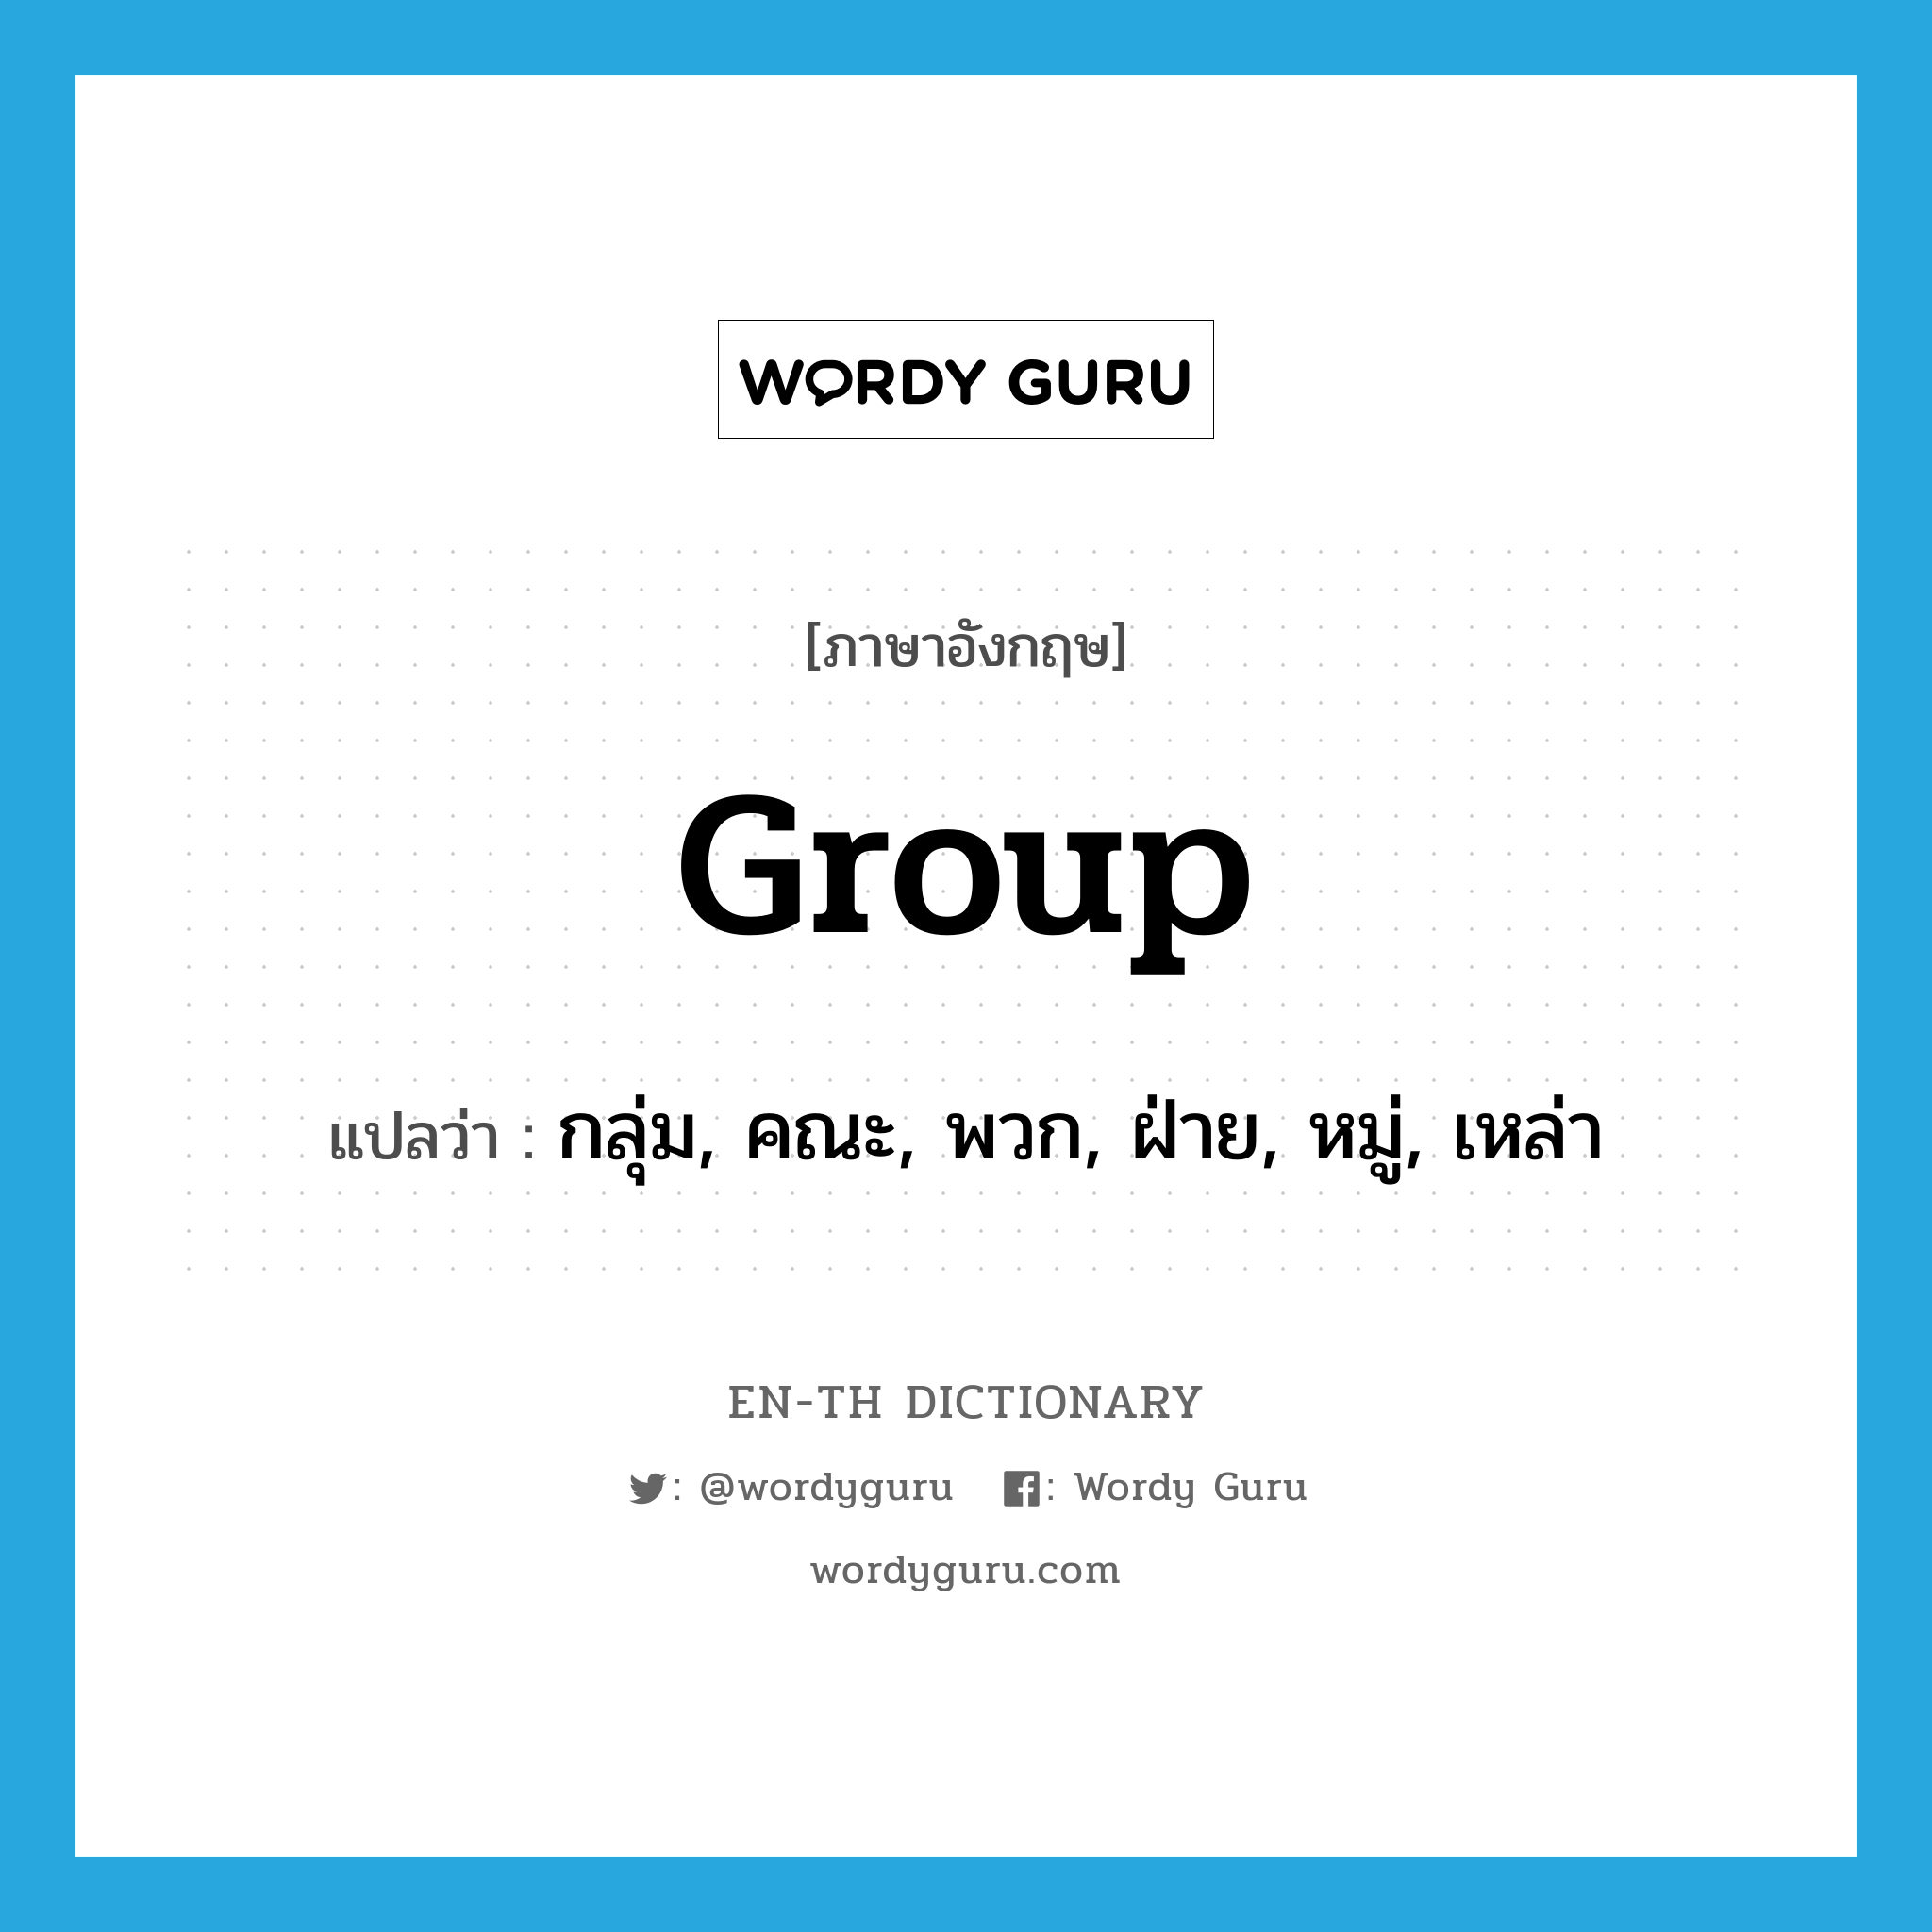 group แปลว่า?, คำศัพท์ภาษาอังกฤษ group แปลว่า กลุ่ม, คณะ, พวก, ฝ่าย, หมู่, เหล่า ประเภท N หมวด N